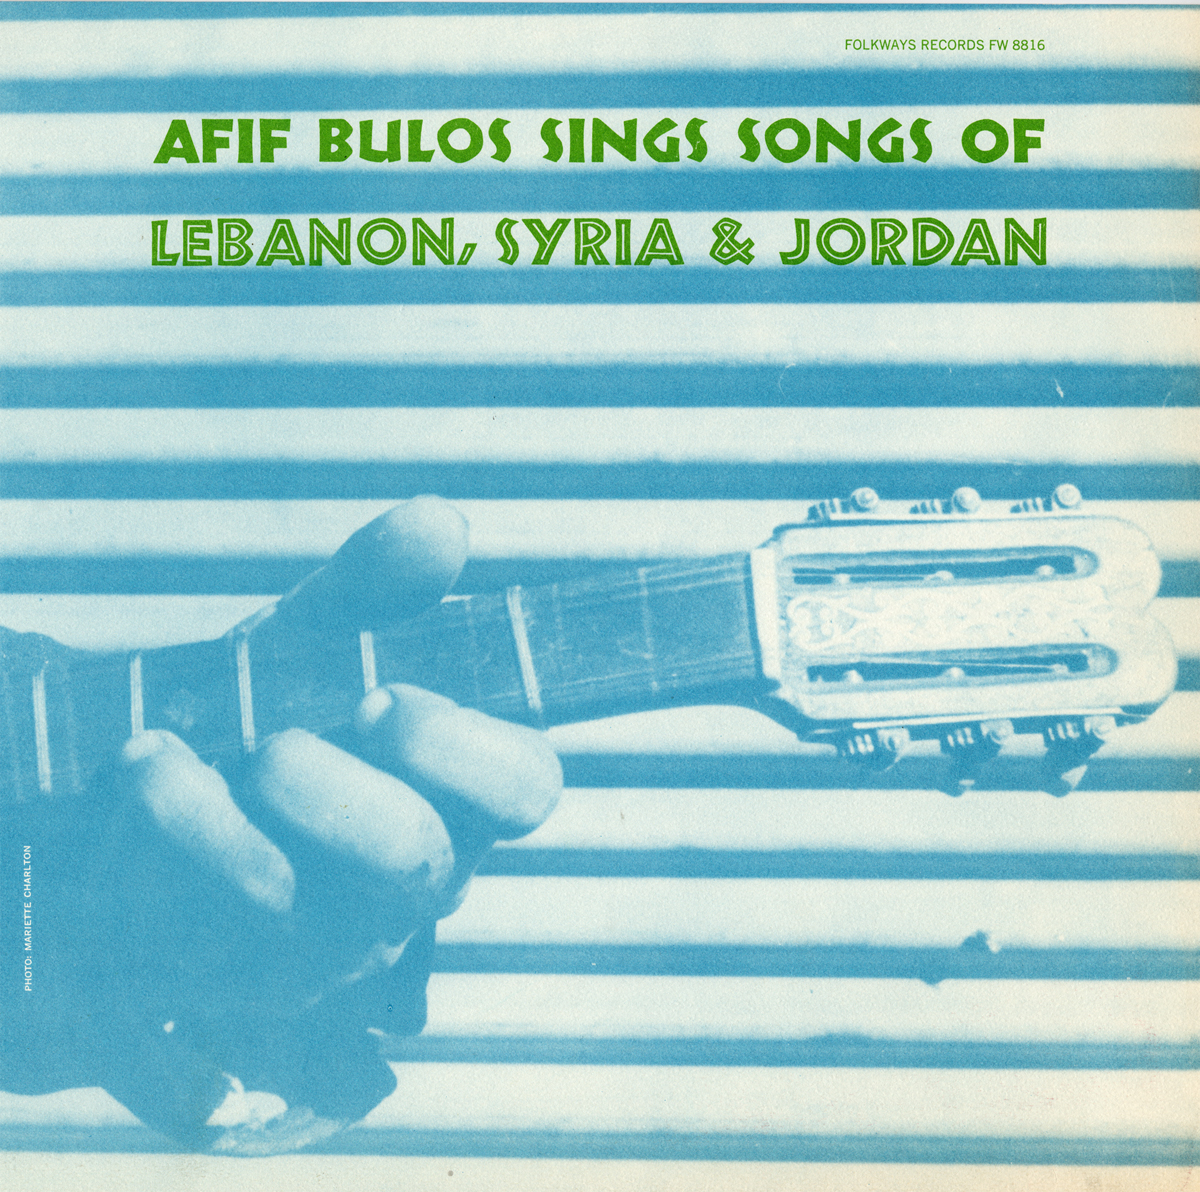 AFIF BULOS SINGS SONGS OF LEBANON